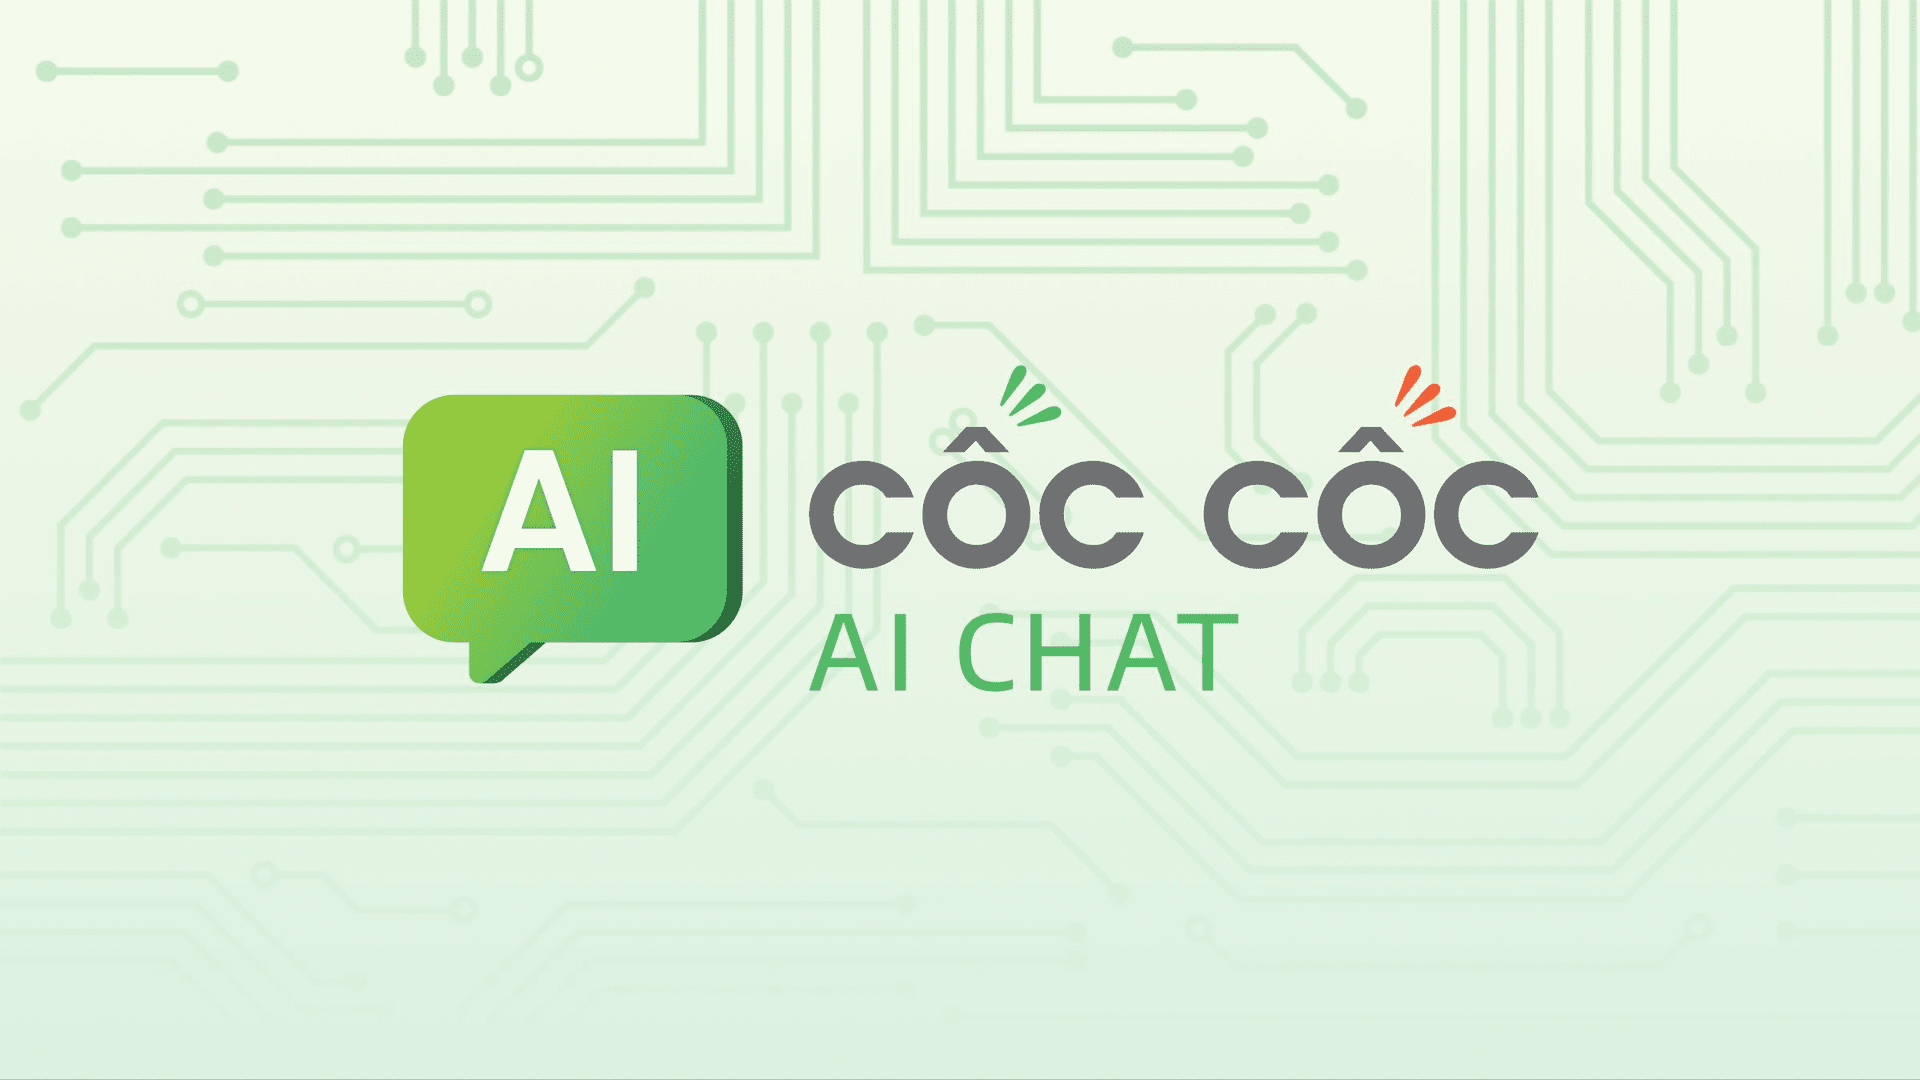 Cốc Cốc tung công cụ AI Chat dựa trên mô hình Chat GPT: Sẵn sàng cạnh tranh sòng phẳng với các gã khổng lồ công nghệ trên thế giới - Ảnh 1.